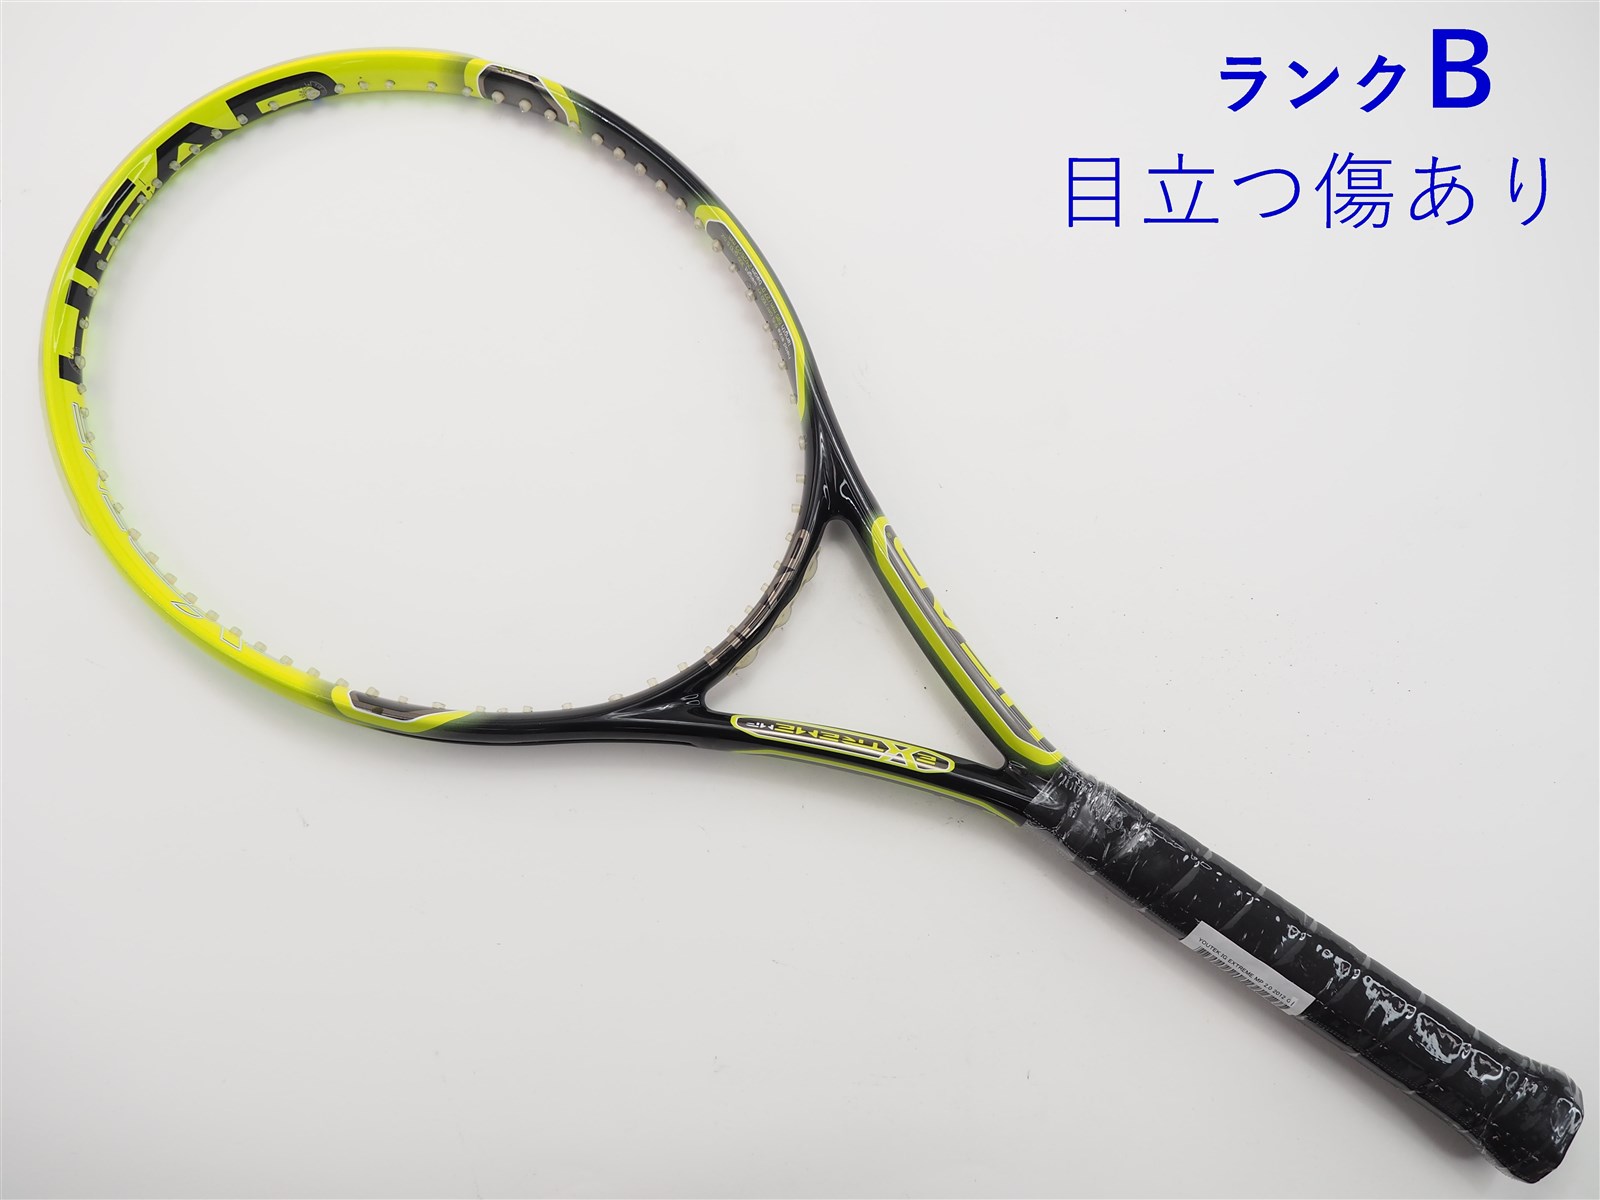 100平方インチ長さテニスラケット ヘッド ユーテック IG エクストリーム MP 2.0 2012年モデル (G1)HEAD YOUTEK IG EXTREME MP 2.0 2012